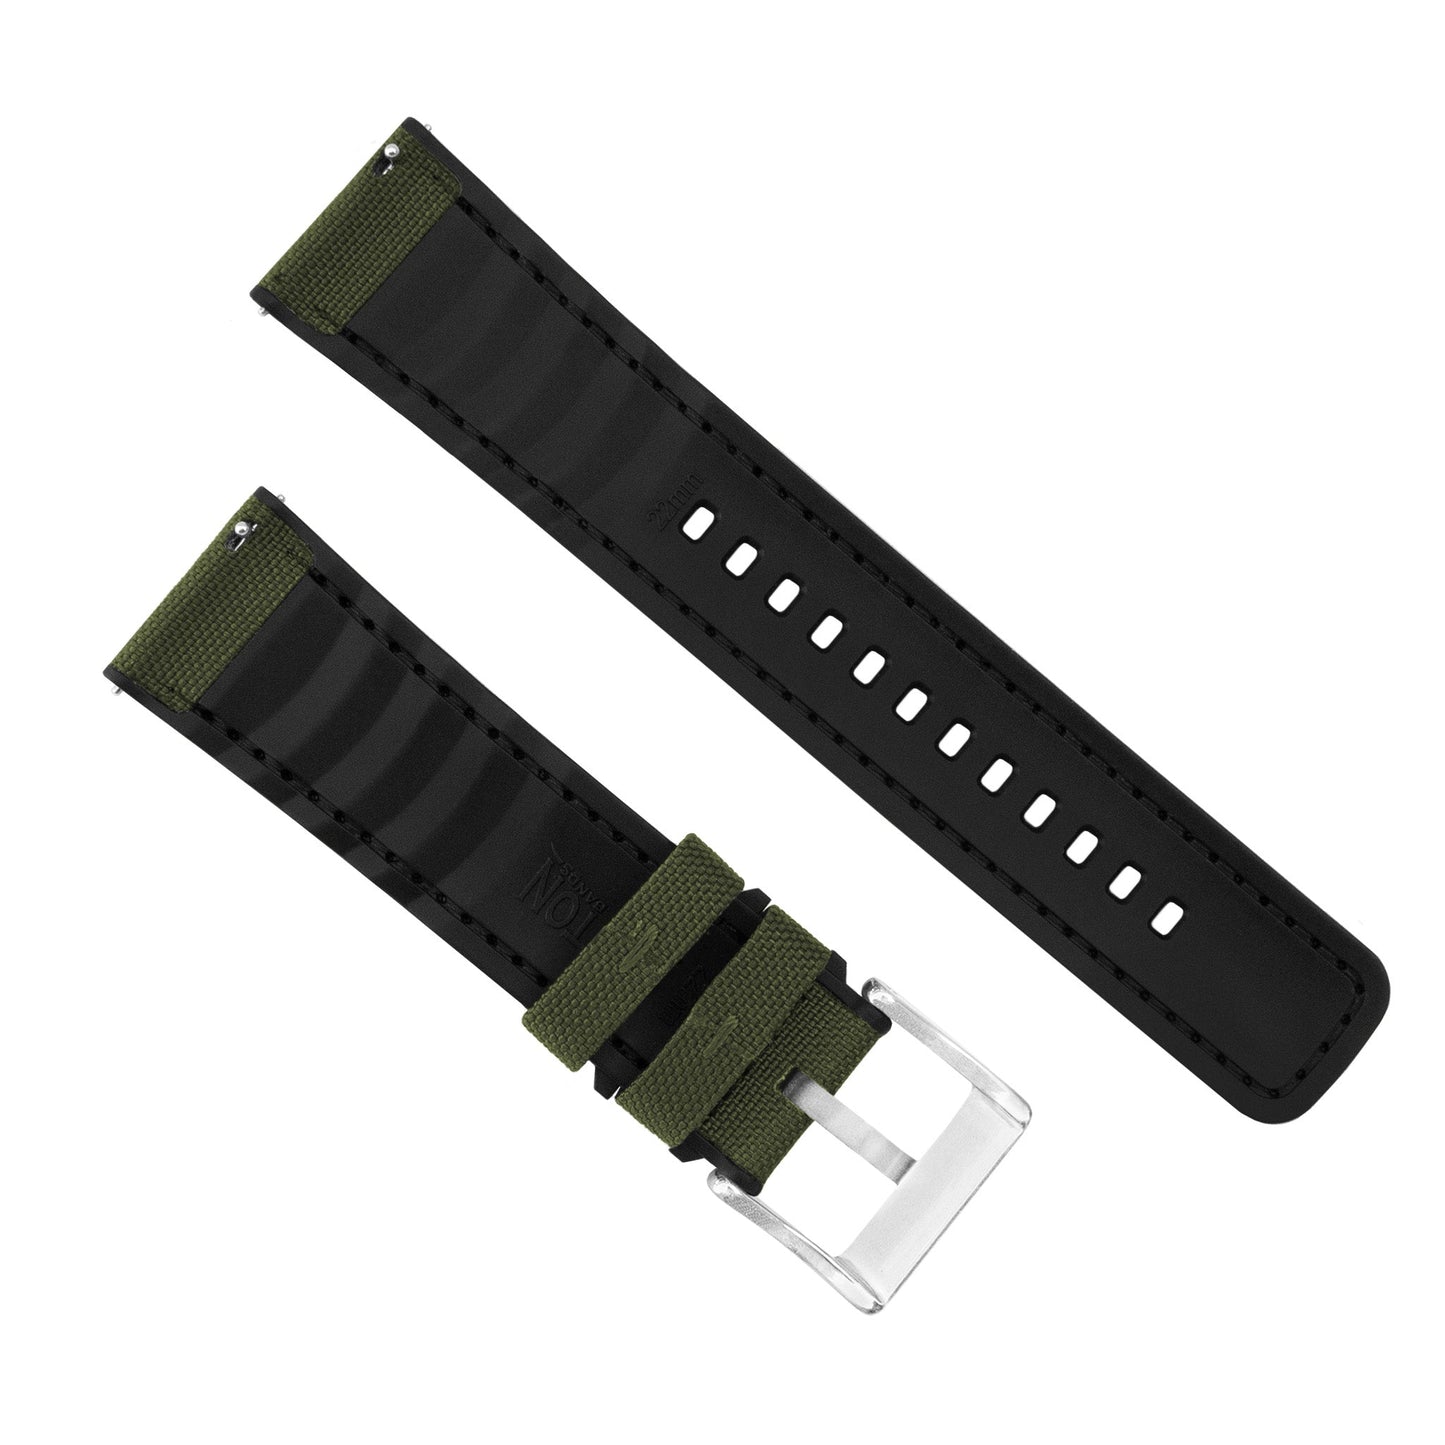 Samsung Galaxy Watch | Cordura Fabric & Silicone Hybrid | Army Green by Barton Watch Bands